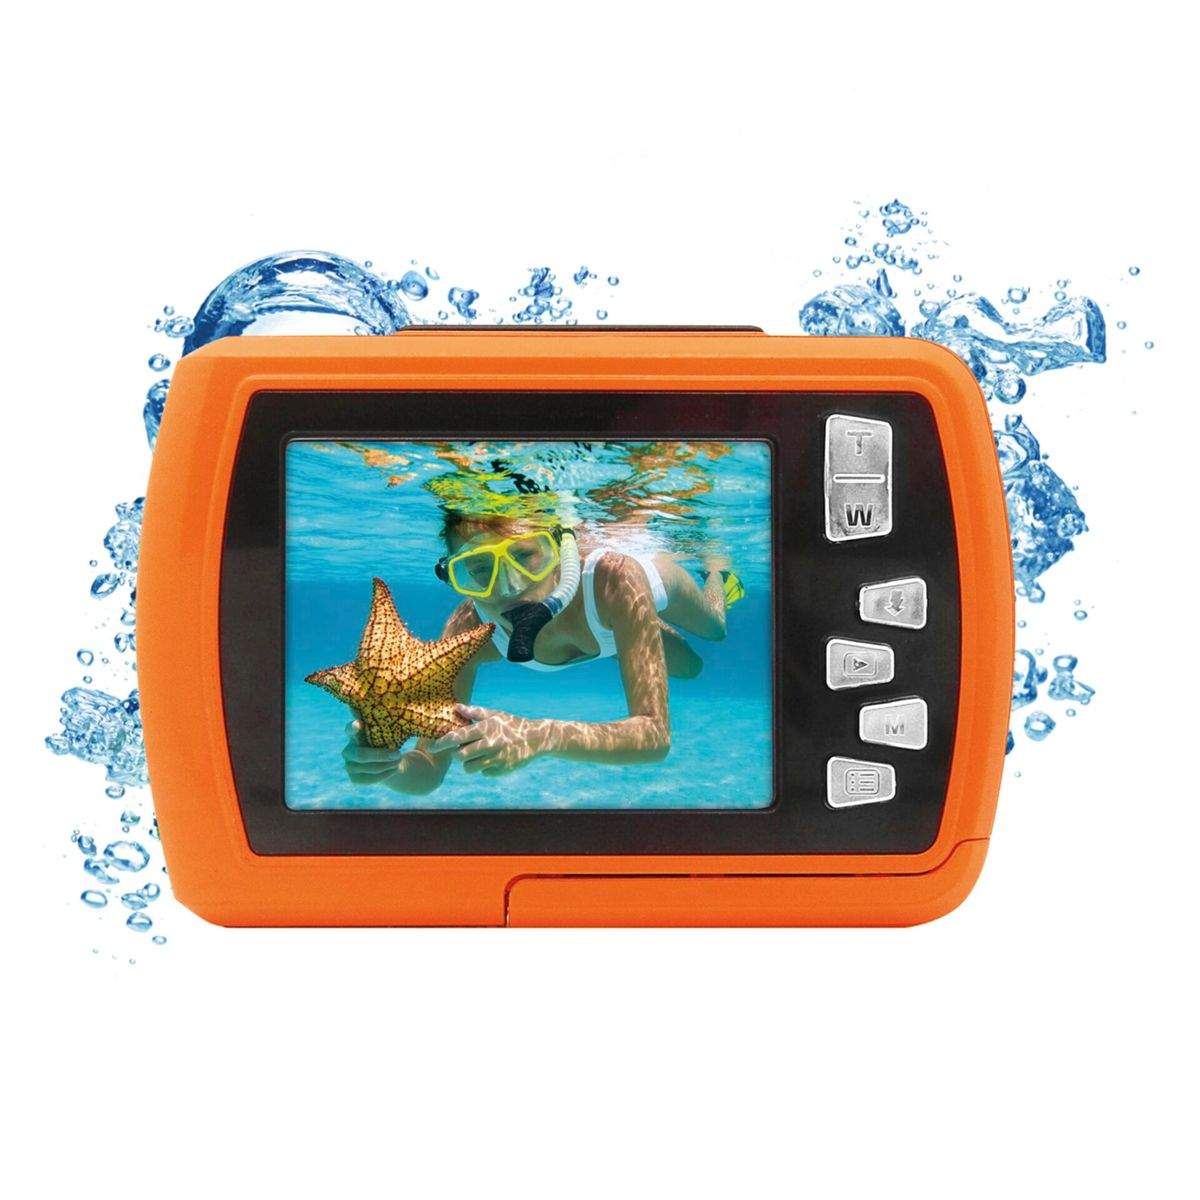 W2024 Unterwasserkamera Aquapix orange Splash EASYPIX Orange